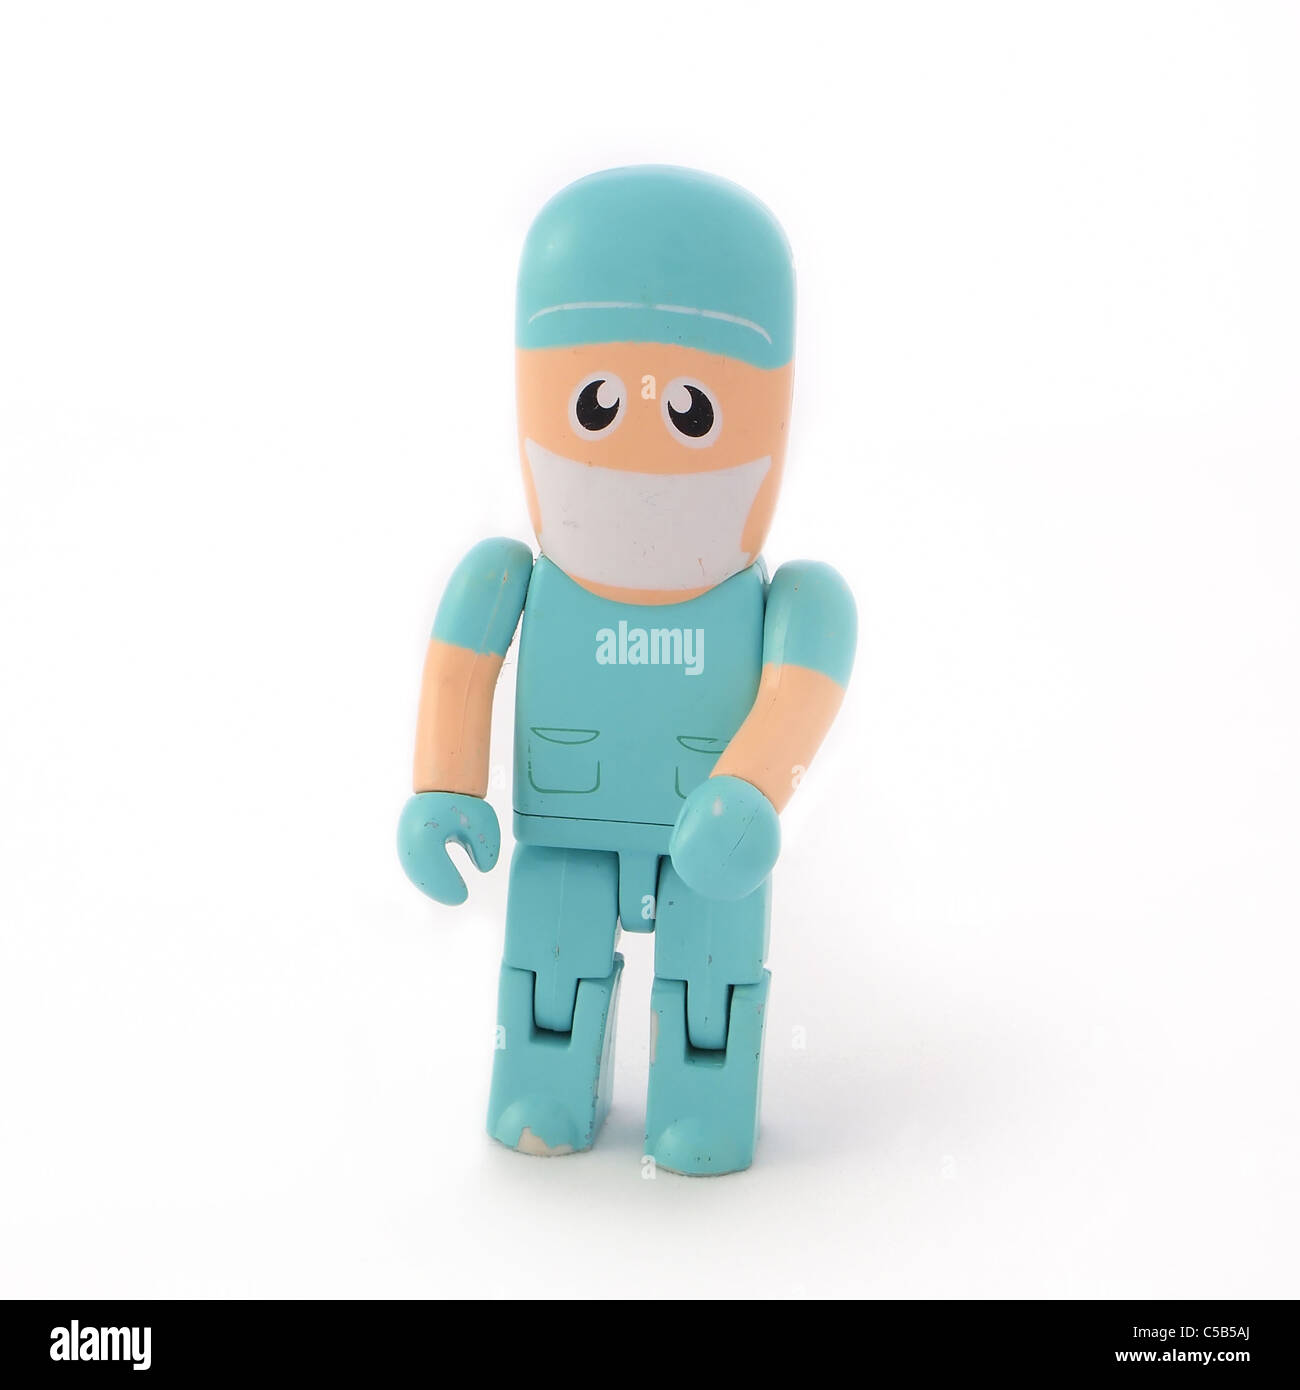 Marionnette jouet en plastique d'un chirurgien Chirurgie figure wearing green scrubs, isolé sur un fond blanc. Banque D'Images